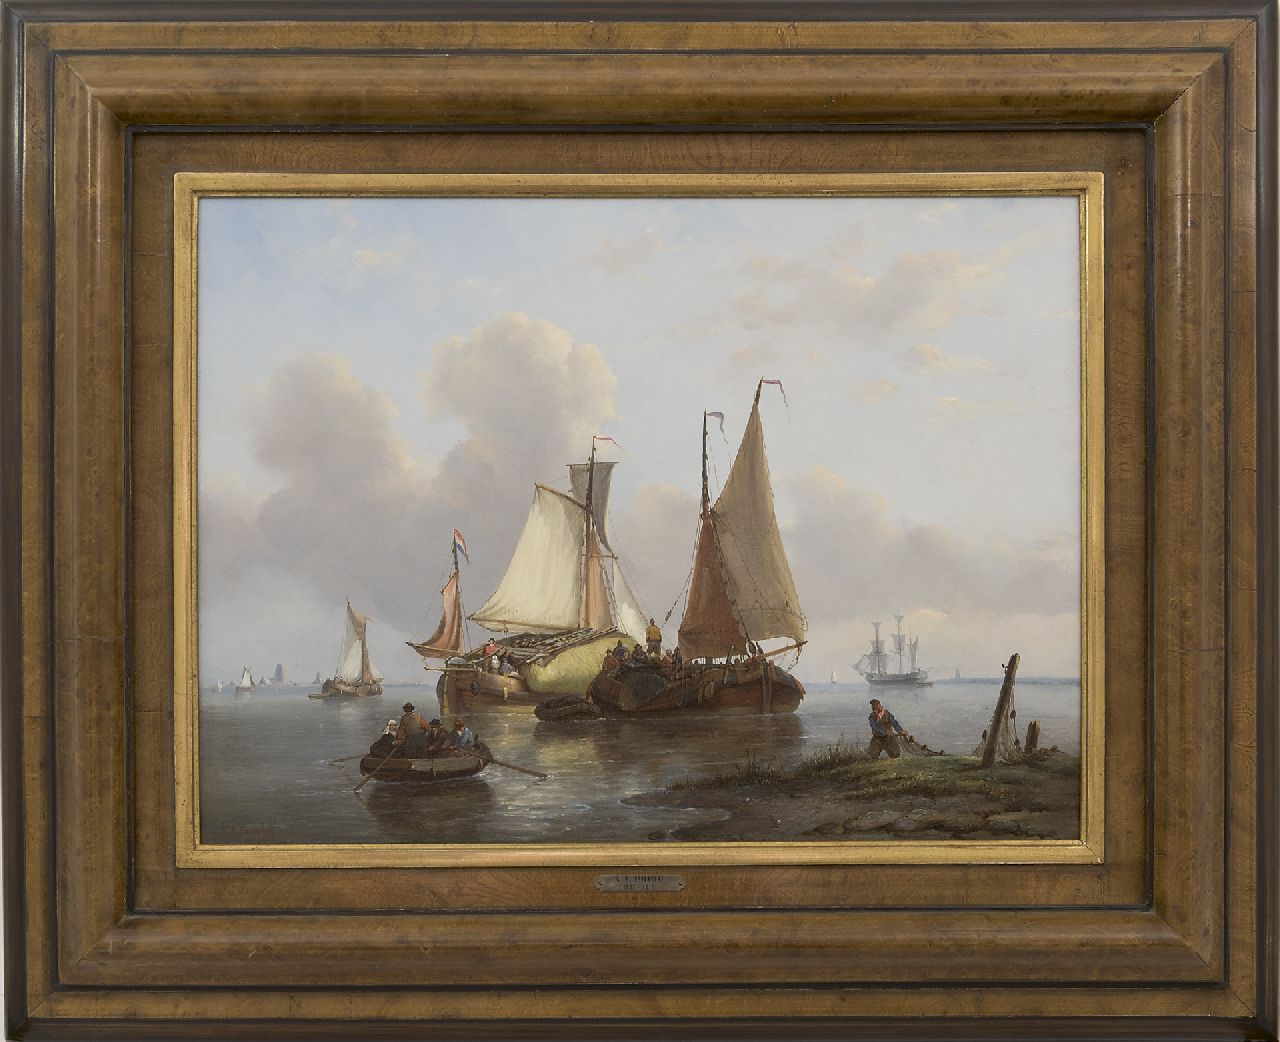 Opdenhoff G.W.  | Witzel 'George Willem' Opdenhoff, Zeilende vrachtschepen bij kalm weer, olieverf op paneel 38,8 x 53,1 cm, gesigneerd linksonder